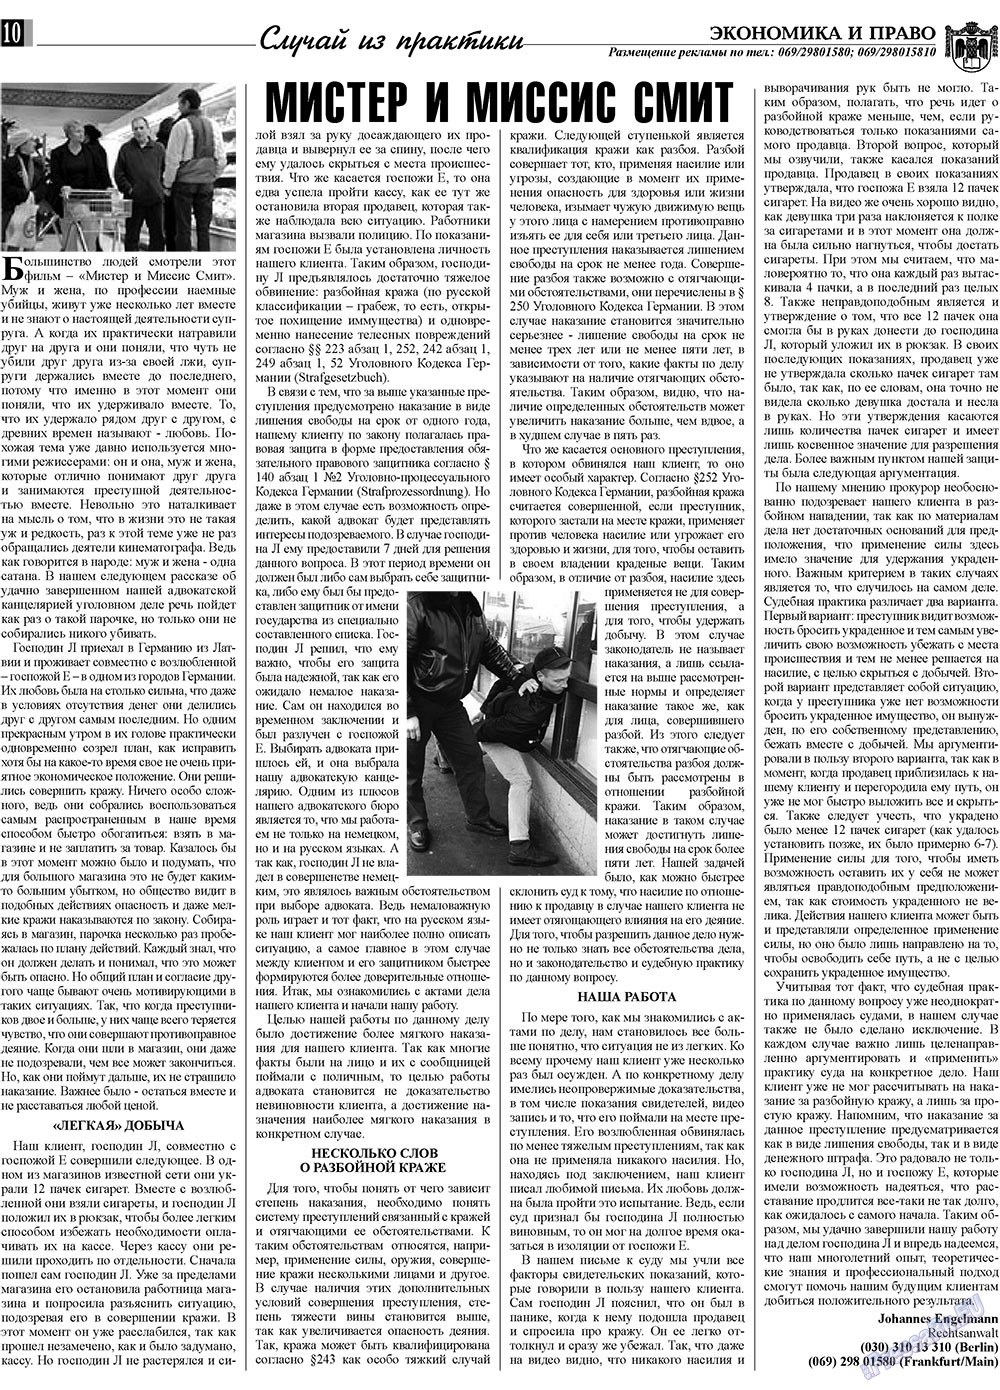 Экономика и право, газета. 2009 №1 стр.10